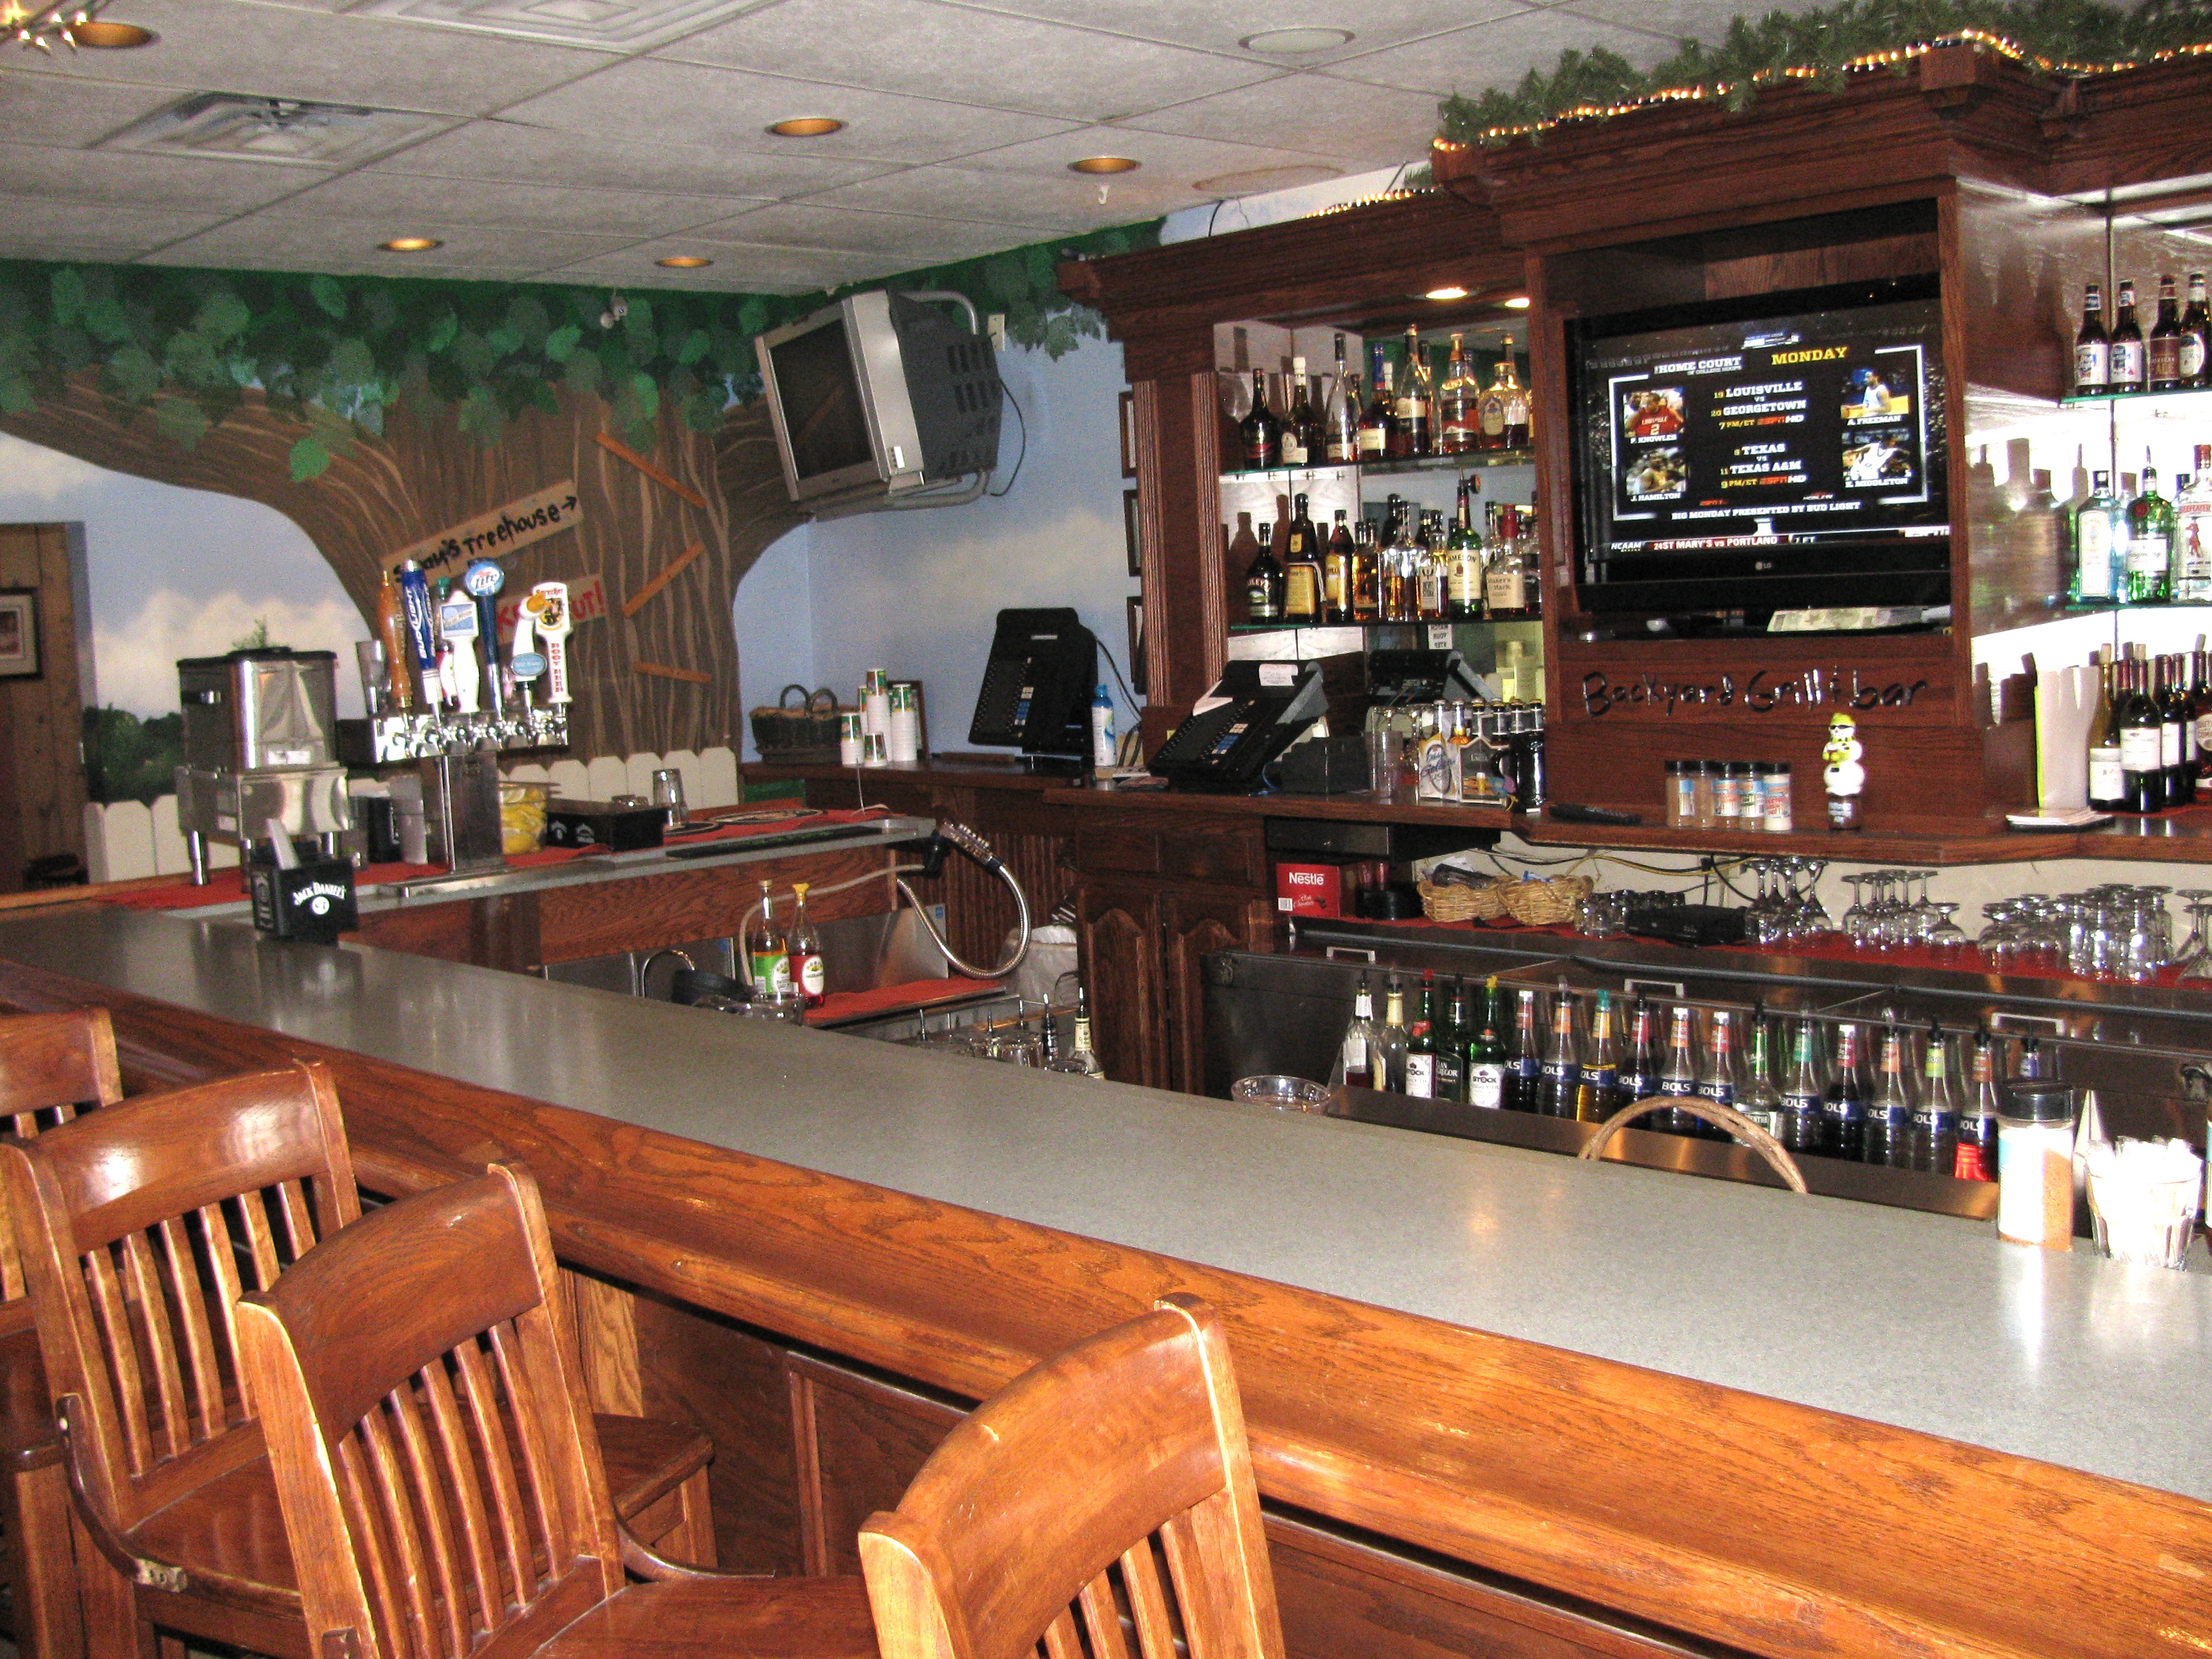 Backyard Grill and Bar Roscoe, Ill - Bar Area